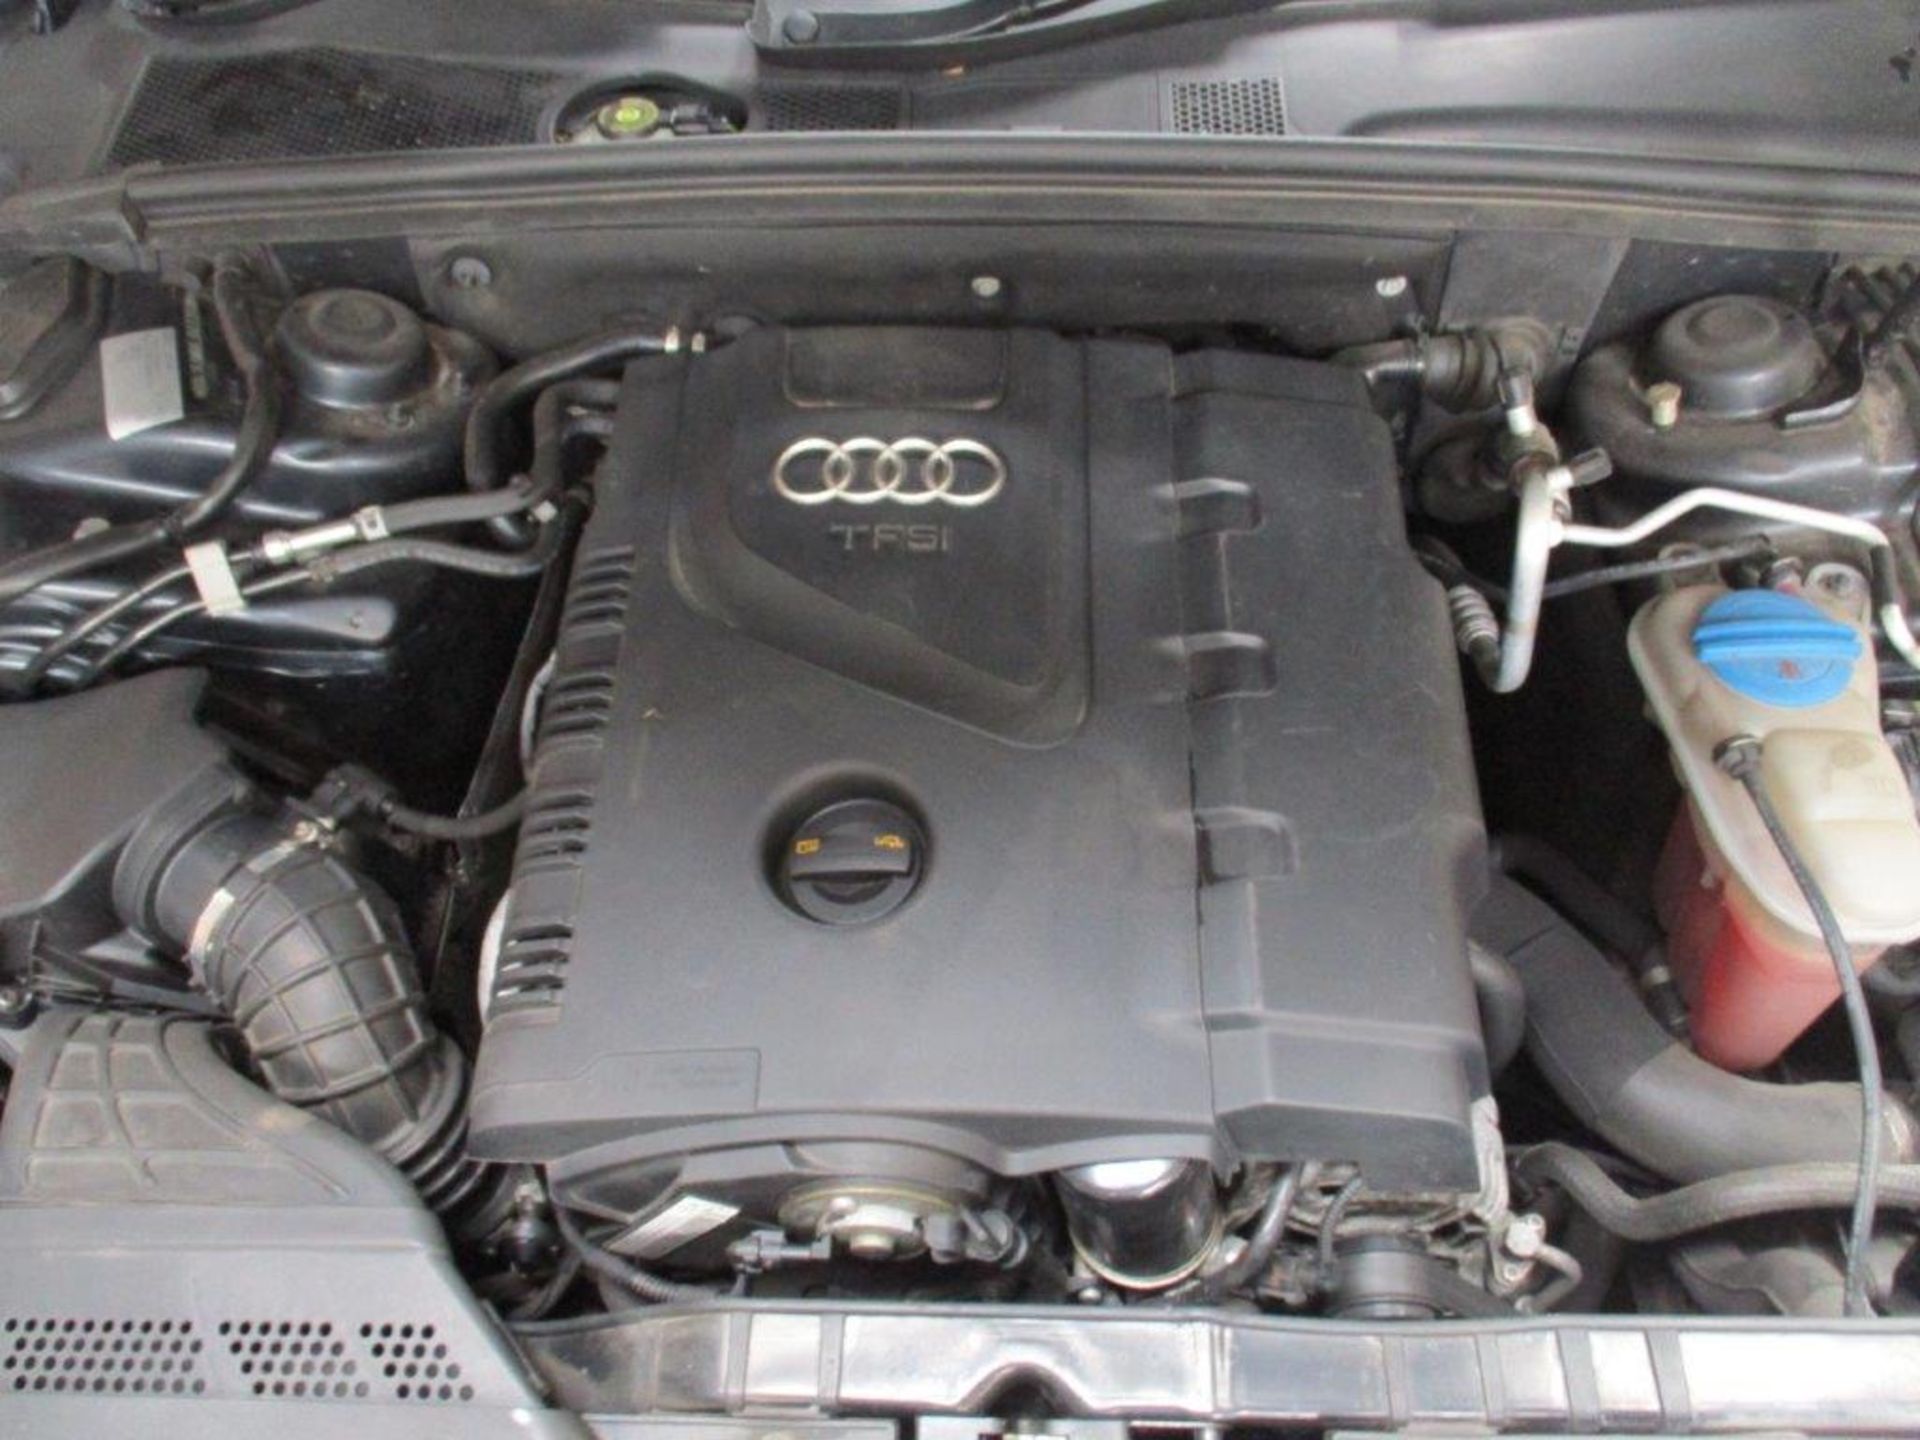 59 09 Audi A5 SE TFSI 211 CVT - Image 7 of 20